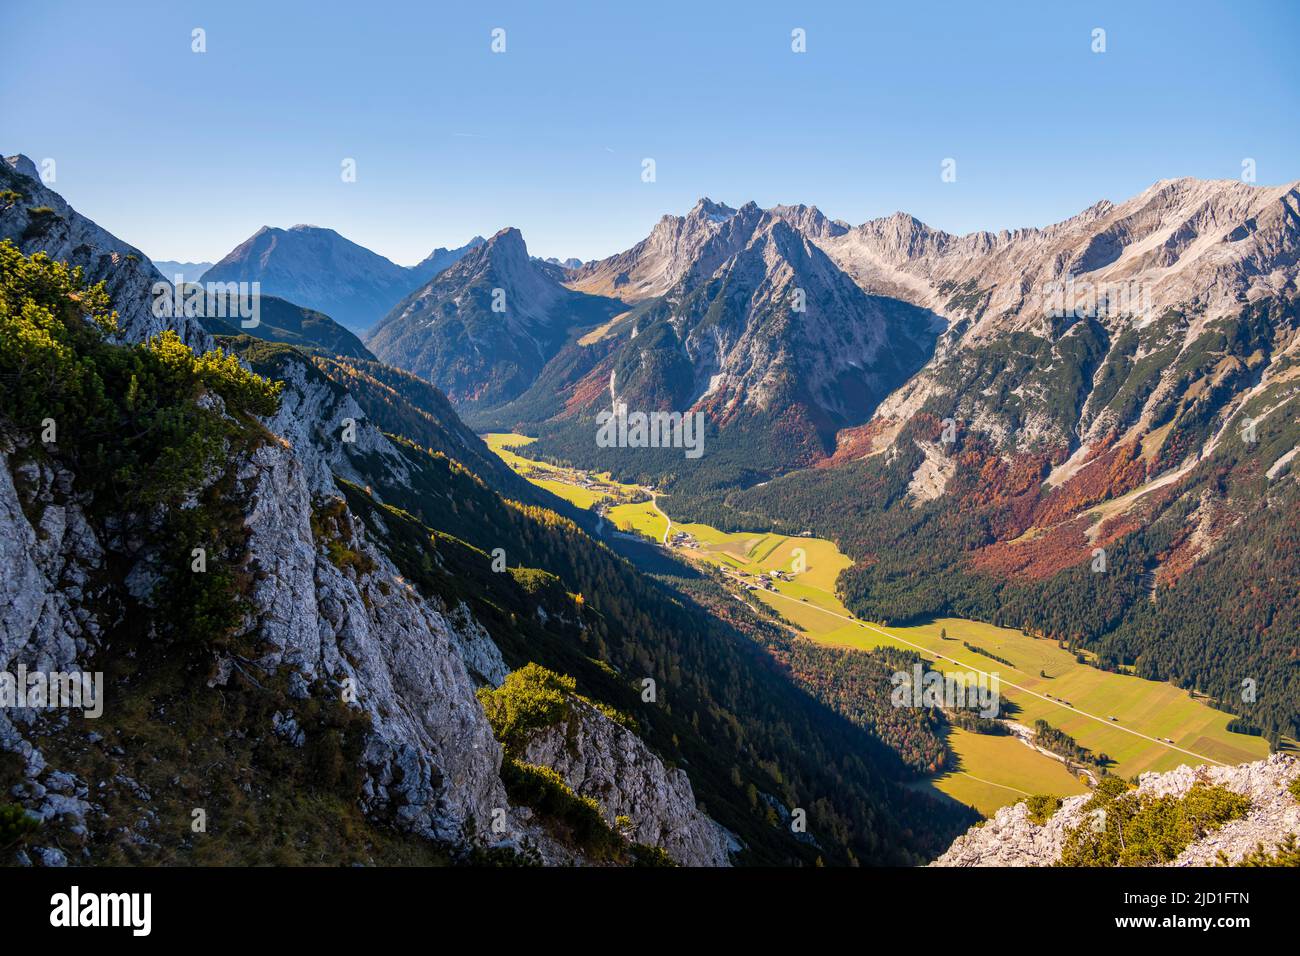 Karwendelspitze occidental, montagnes de Wetterstein, et vue de la grosse Arnspitze, vallée de montagne et montagnes, près de Scharnitz, Bavière, Allemagne Banque D'Images